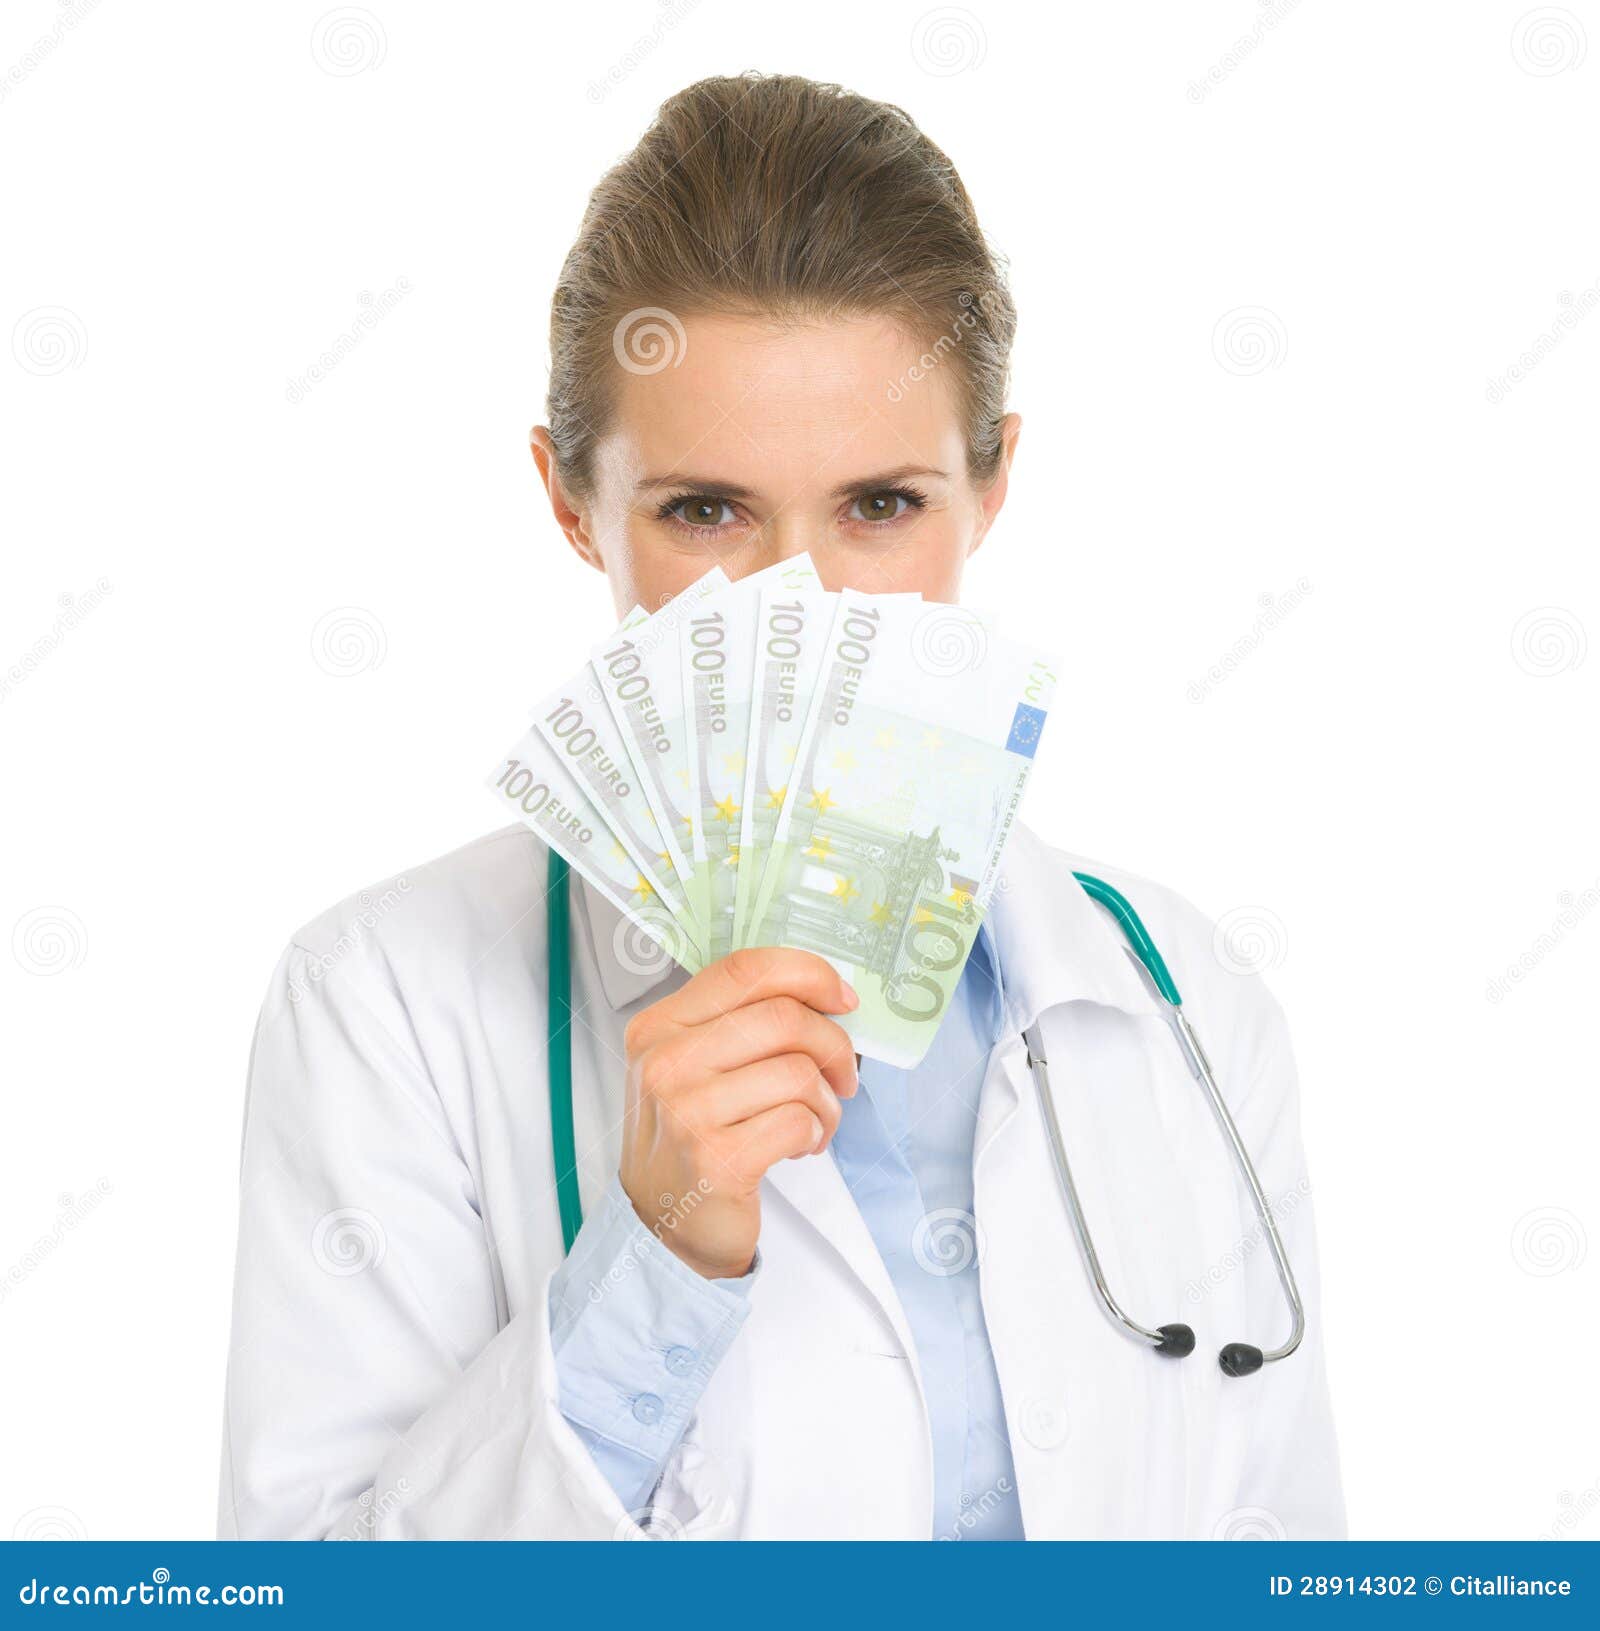 隐藏在欧元之后风扇的医生妇女. 隐藏在白色查出的欧元之后风扇的医生妇女